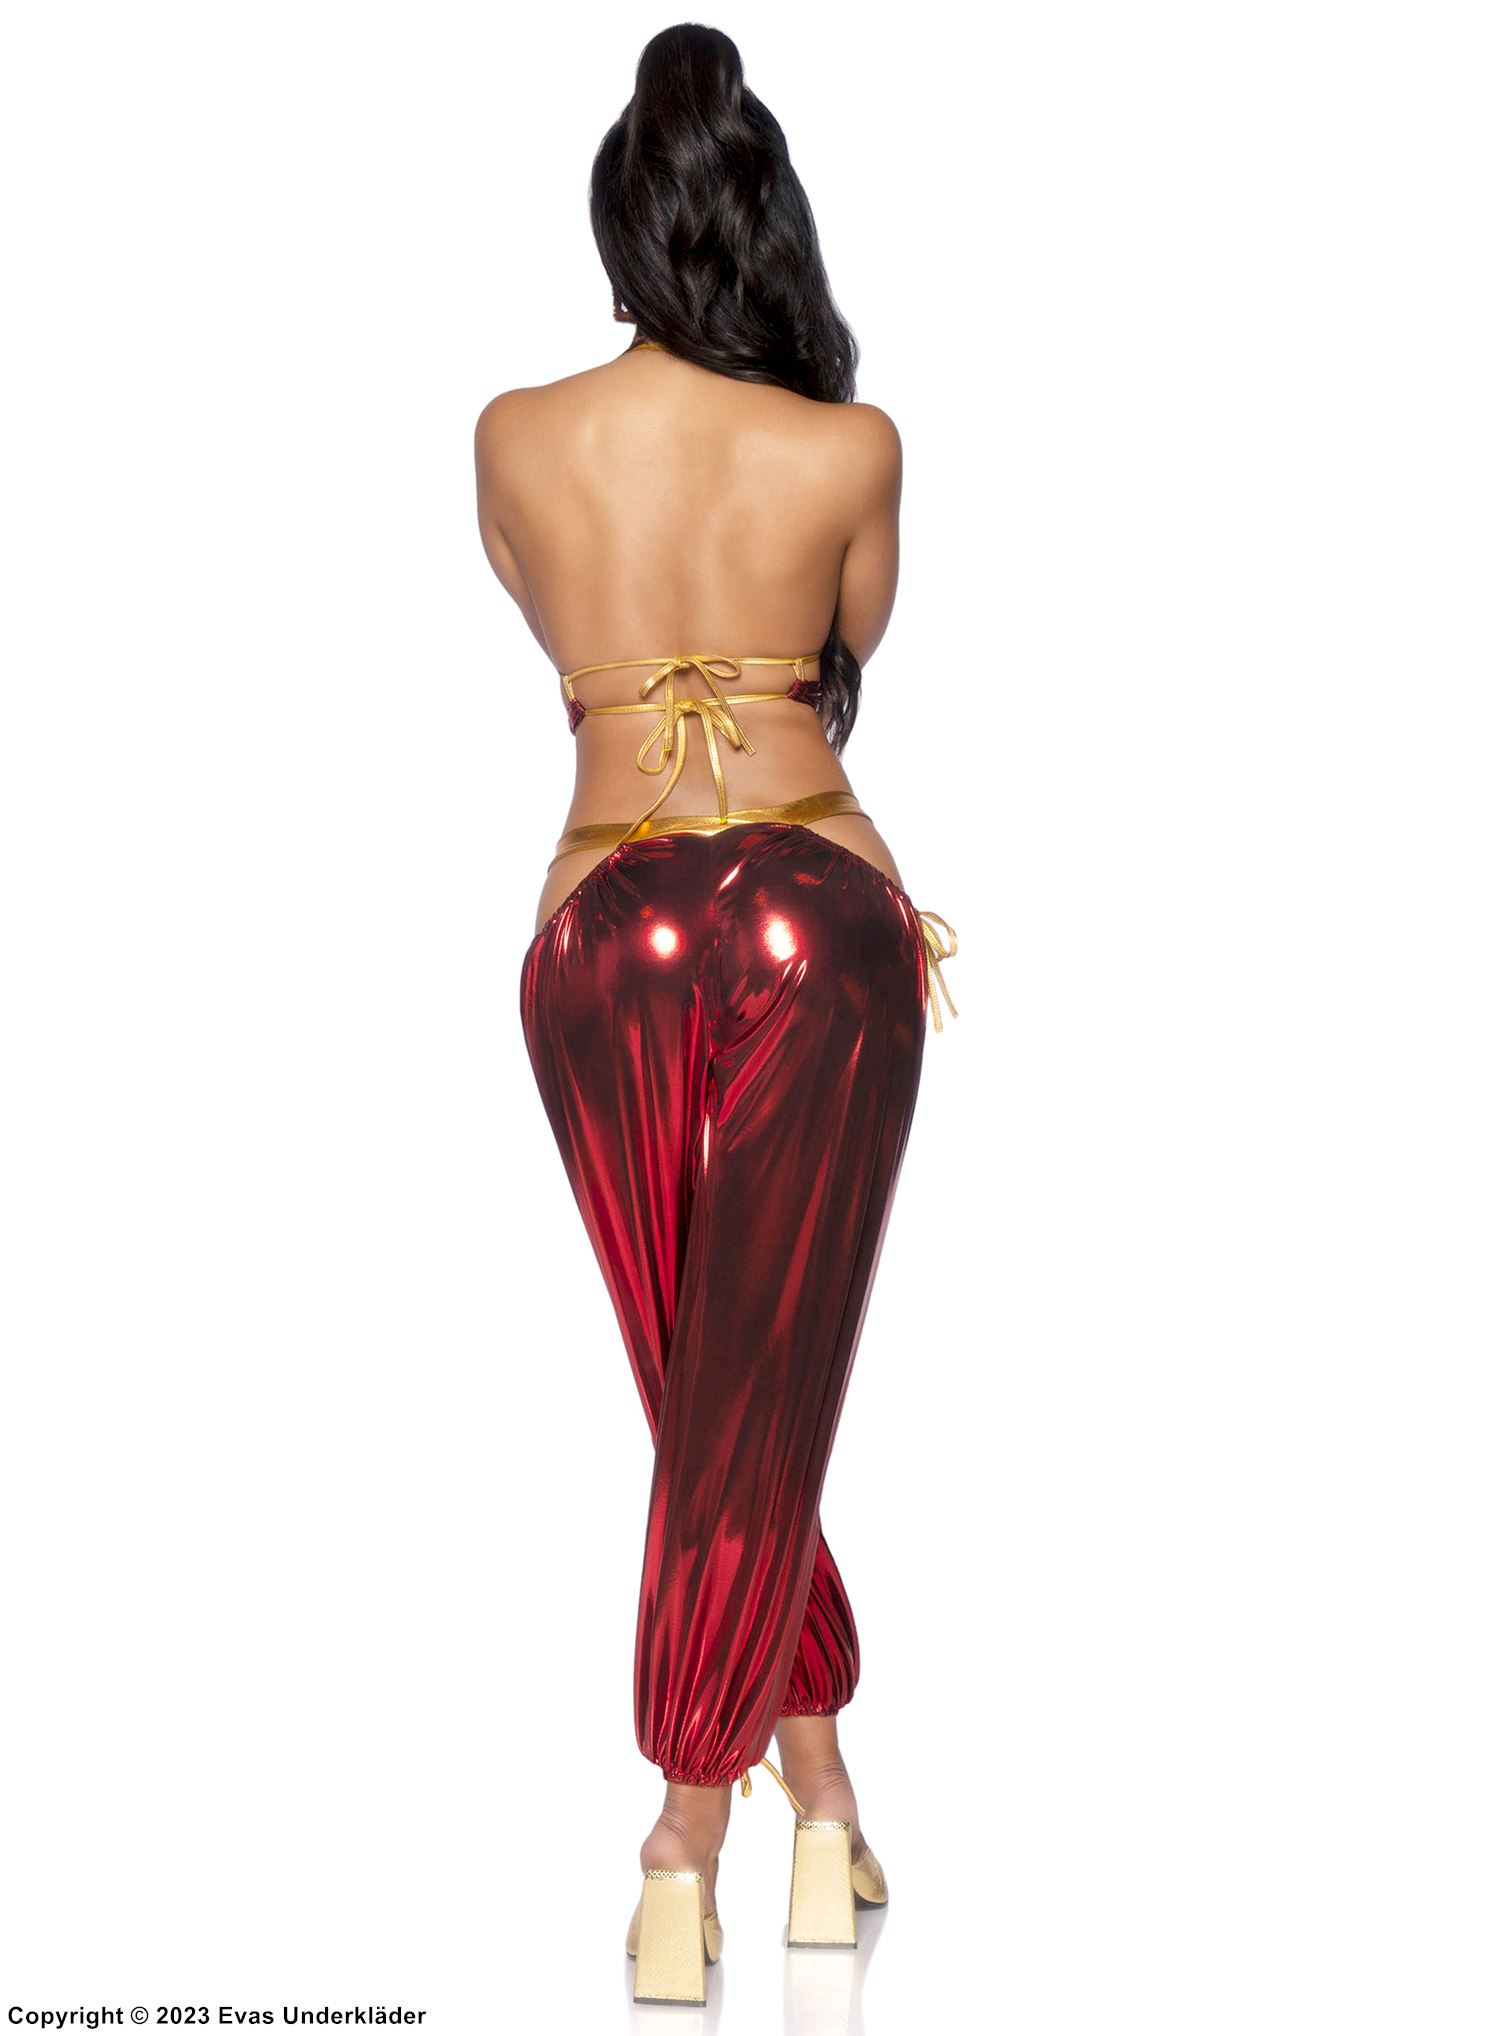 Prinzessin Jasmin aus Aladdin, Kostüm-Oberteil und -Hose, schillernder Gewebe, hoher Schlitz